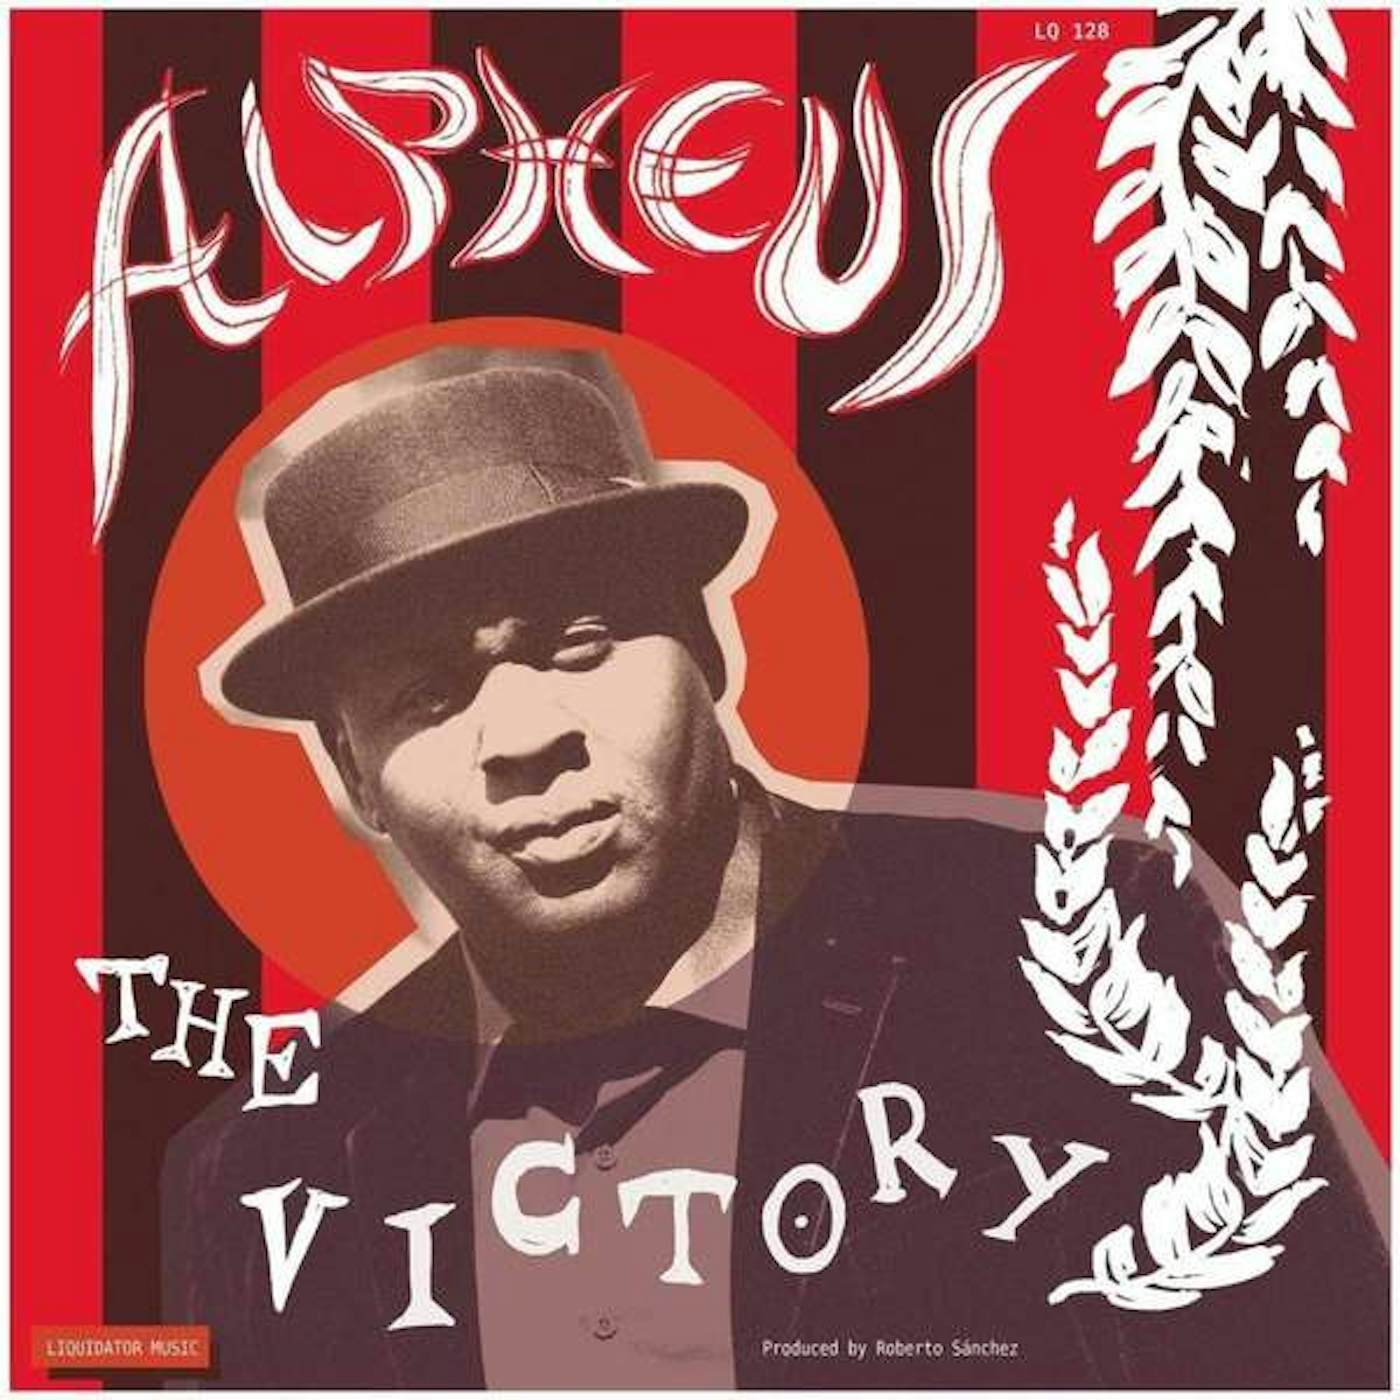 Alpheus VICTORY Vinyl Record